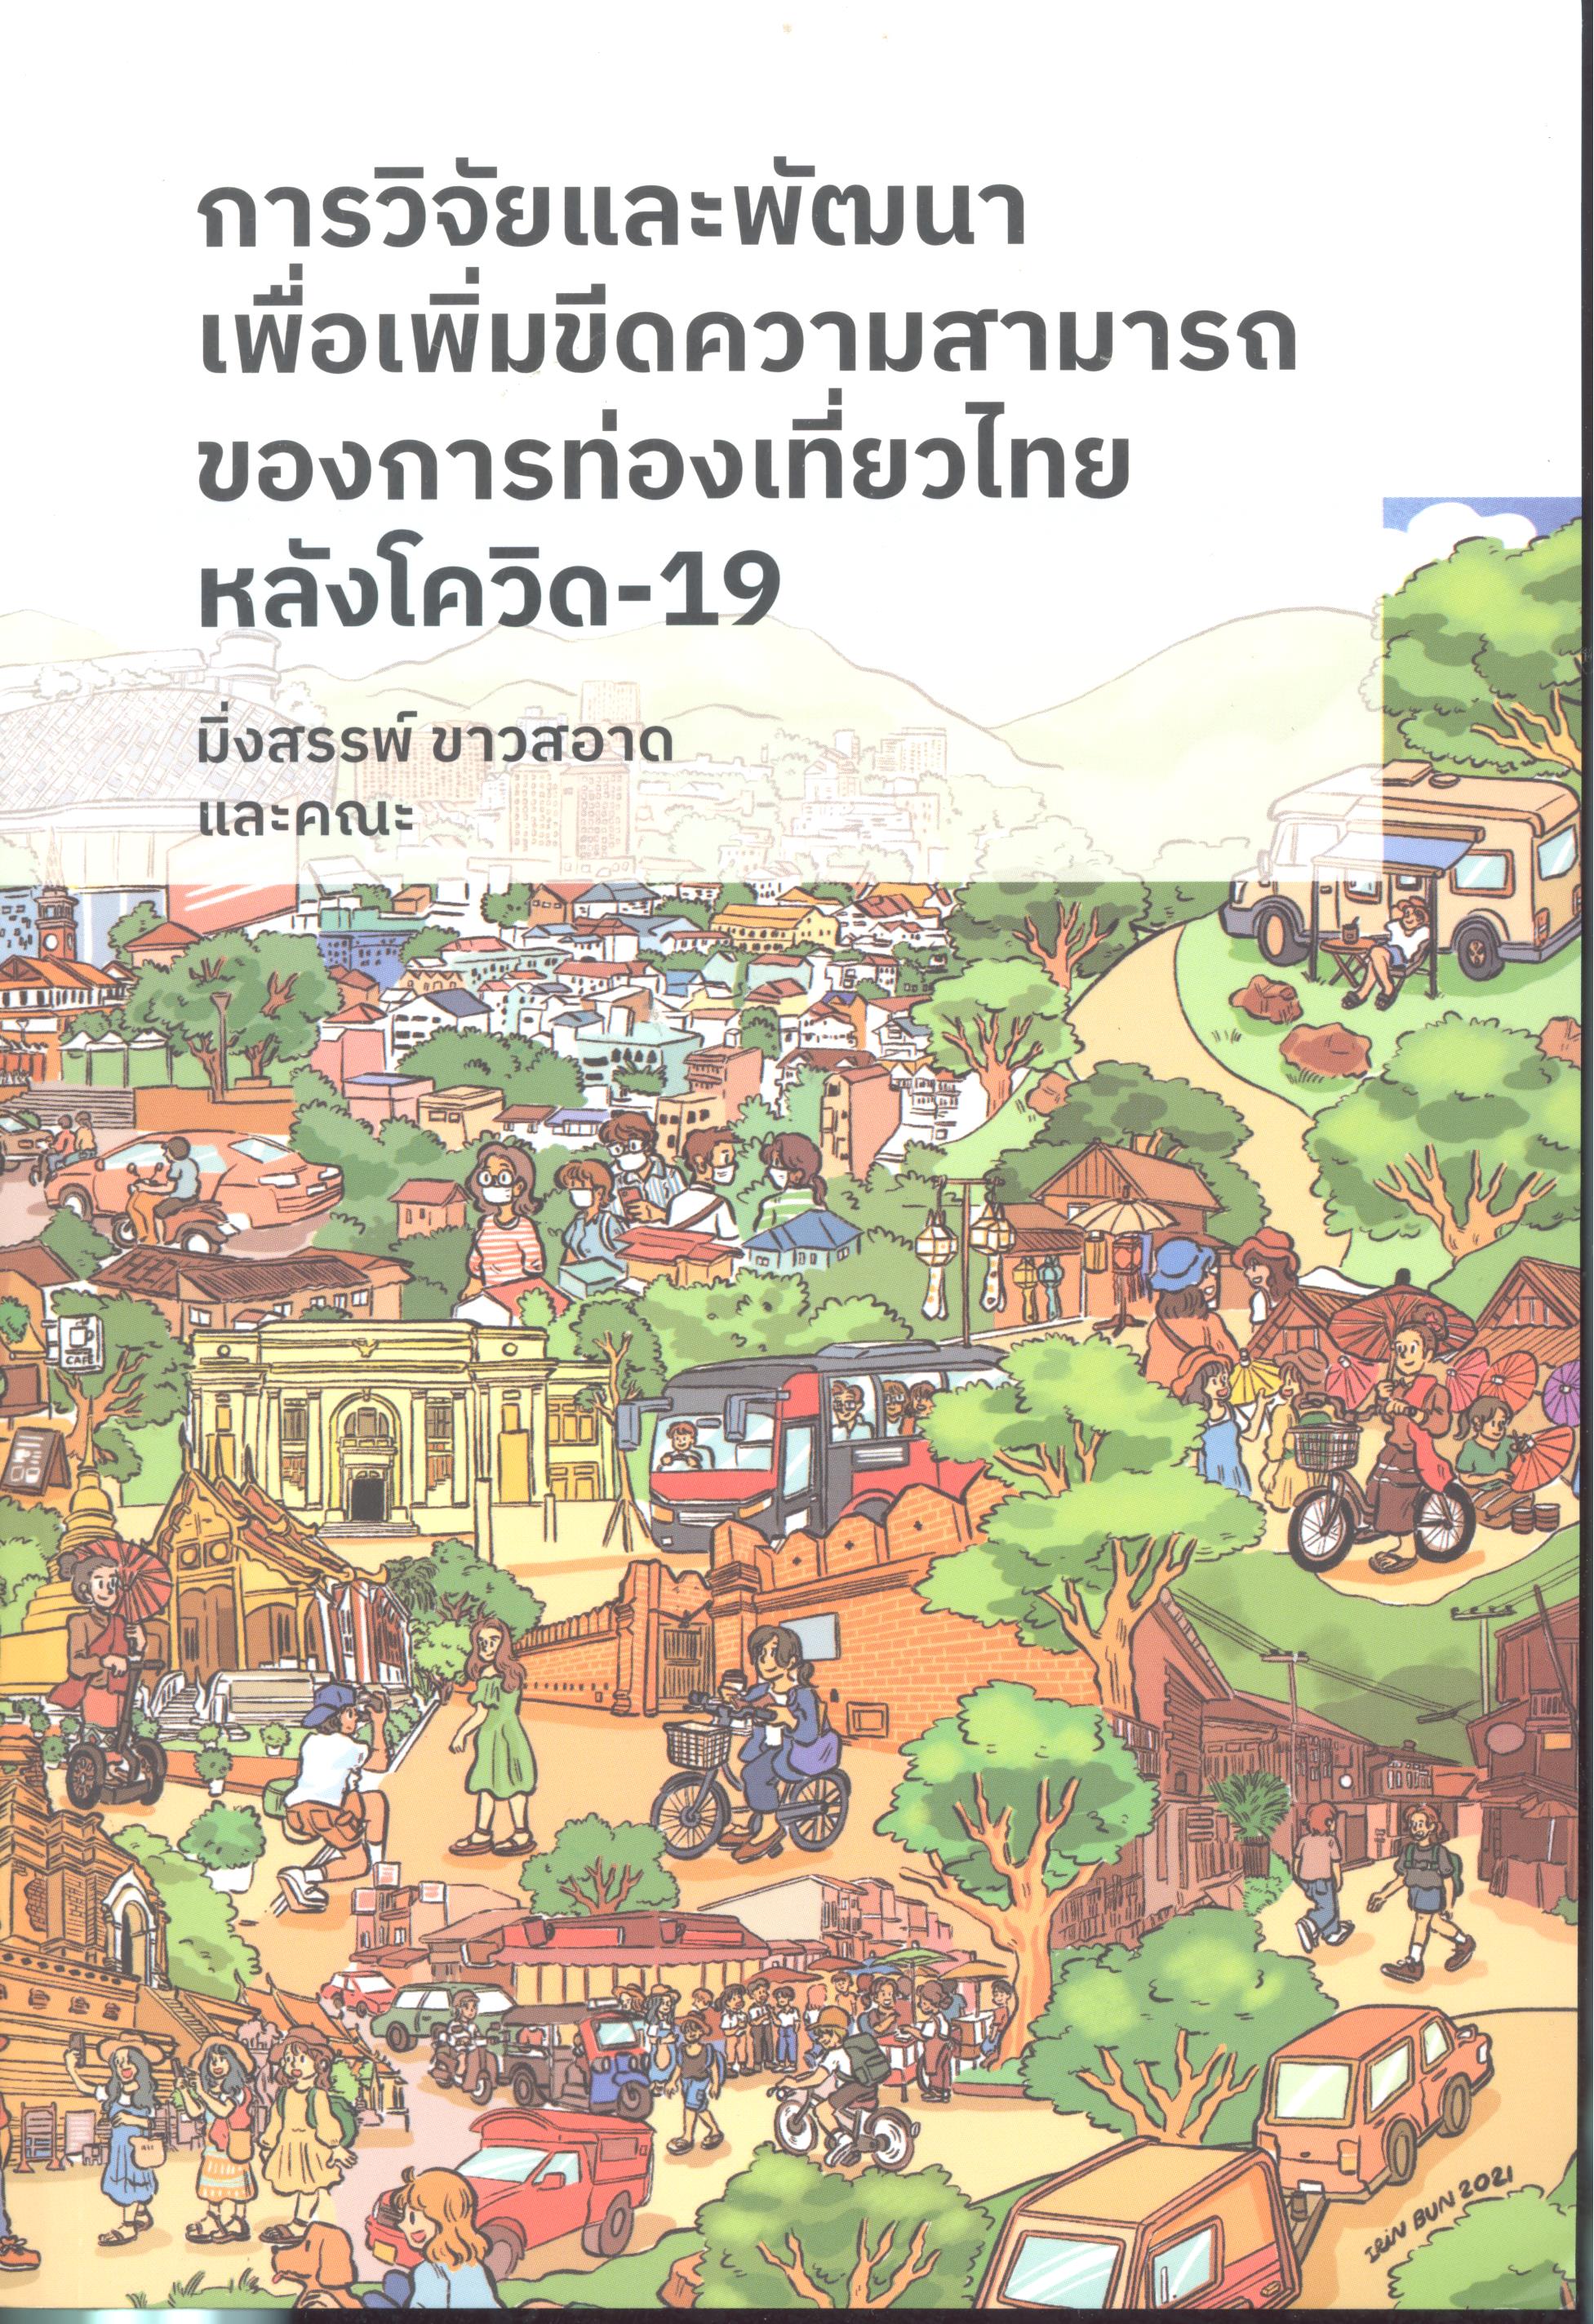 การวิจัยและพัฒนาเพื่อเพิ่มขีดความสามารถของการท่องเที่ยวไทยหลังโควิด-19